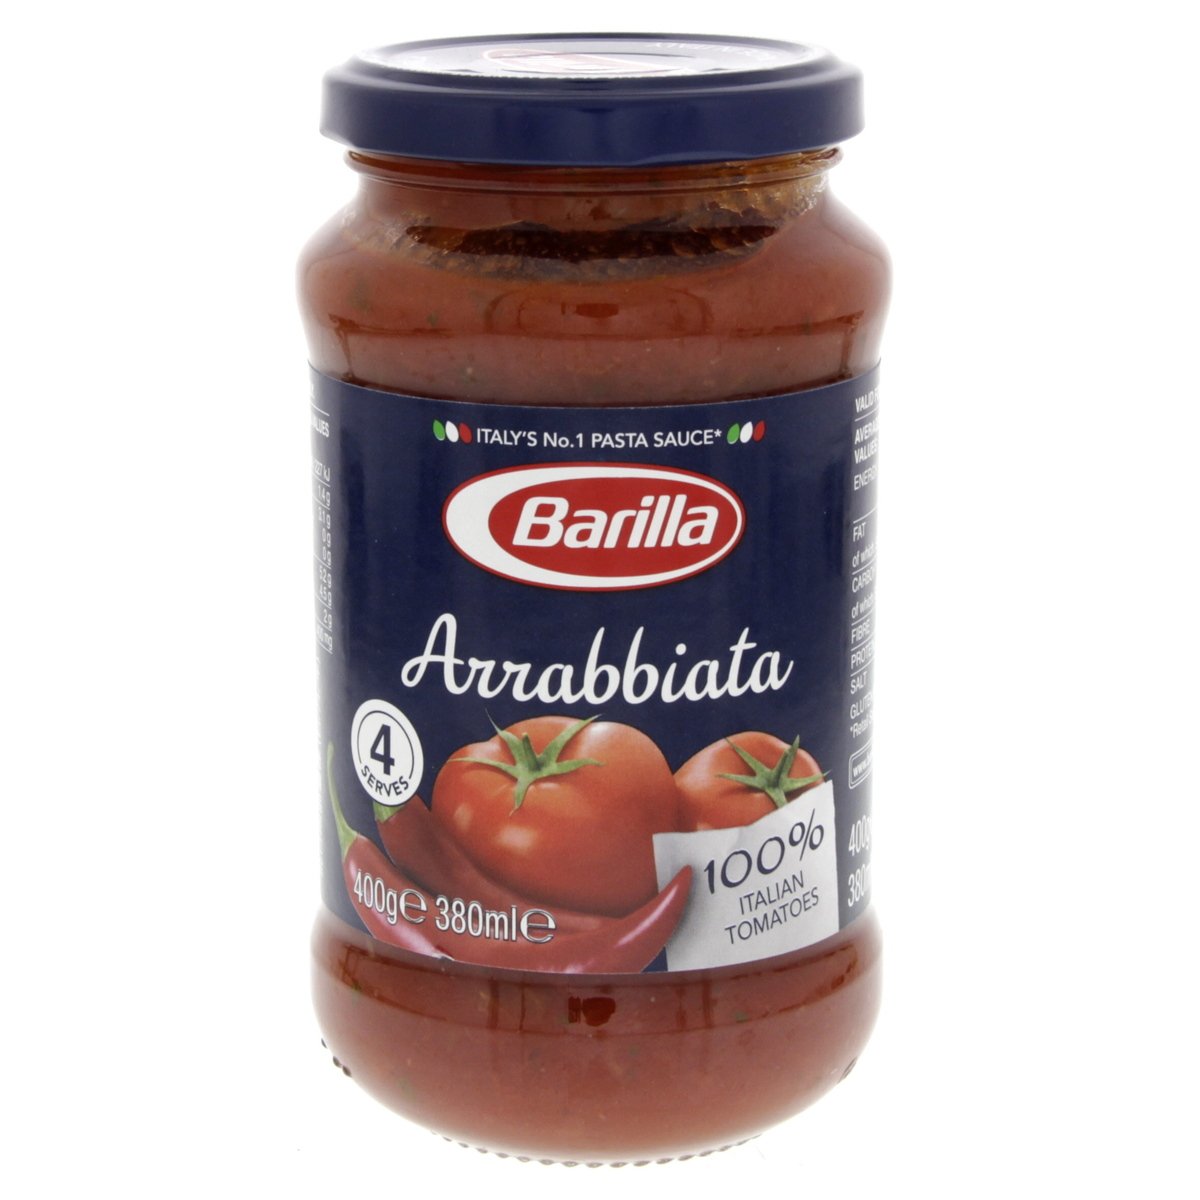 باريلا ارابياتا صلصة الطماطم بالفلفل الحار ٤٠٠ جم